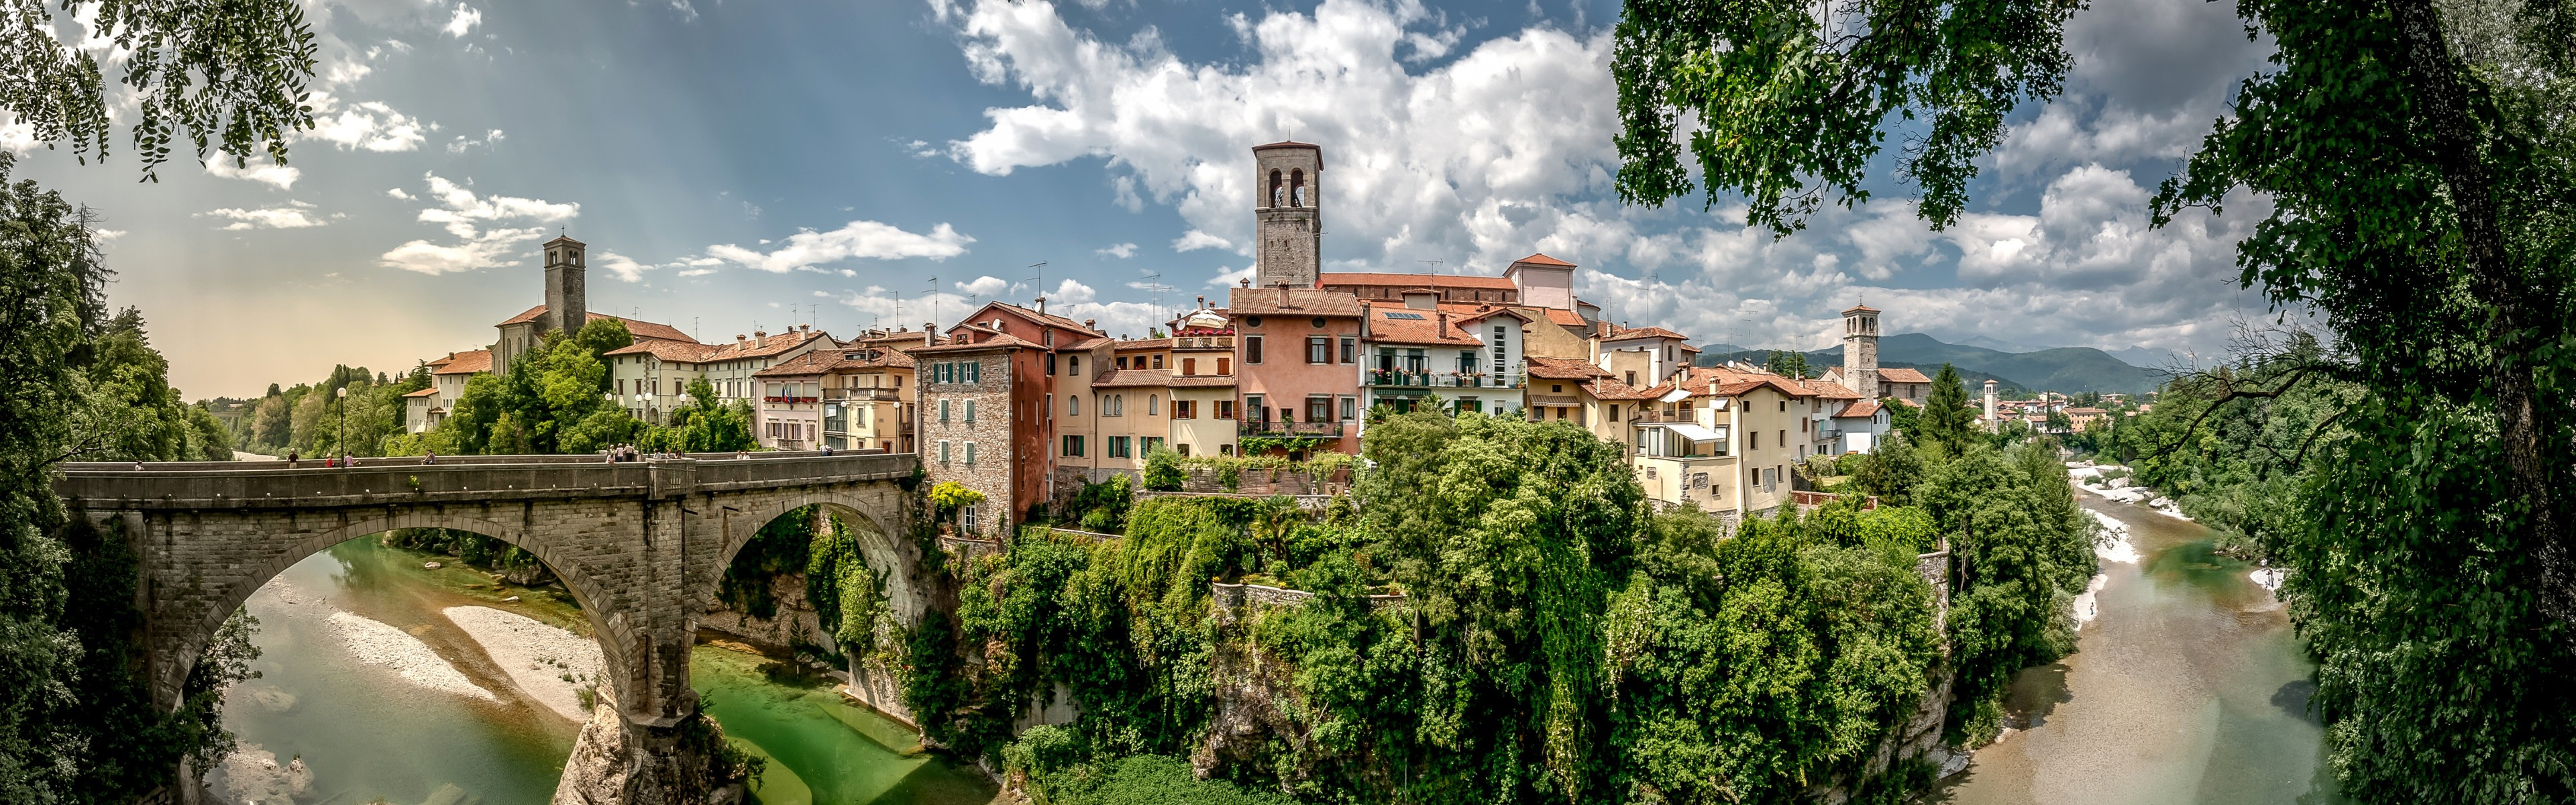 Download 3840x1200 Italy, Cividale Del Friuli, Buildings, Sky, Panoramic, Bridge, River Wallpaper